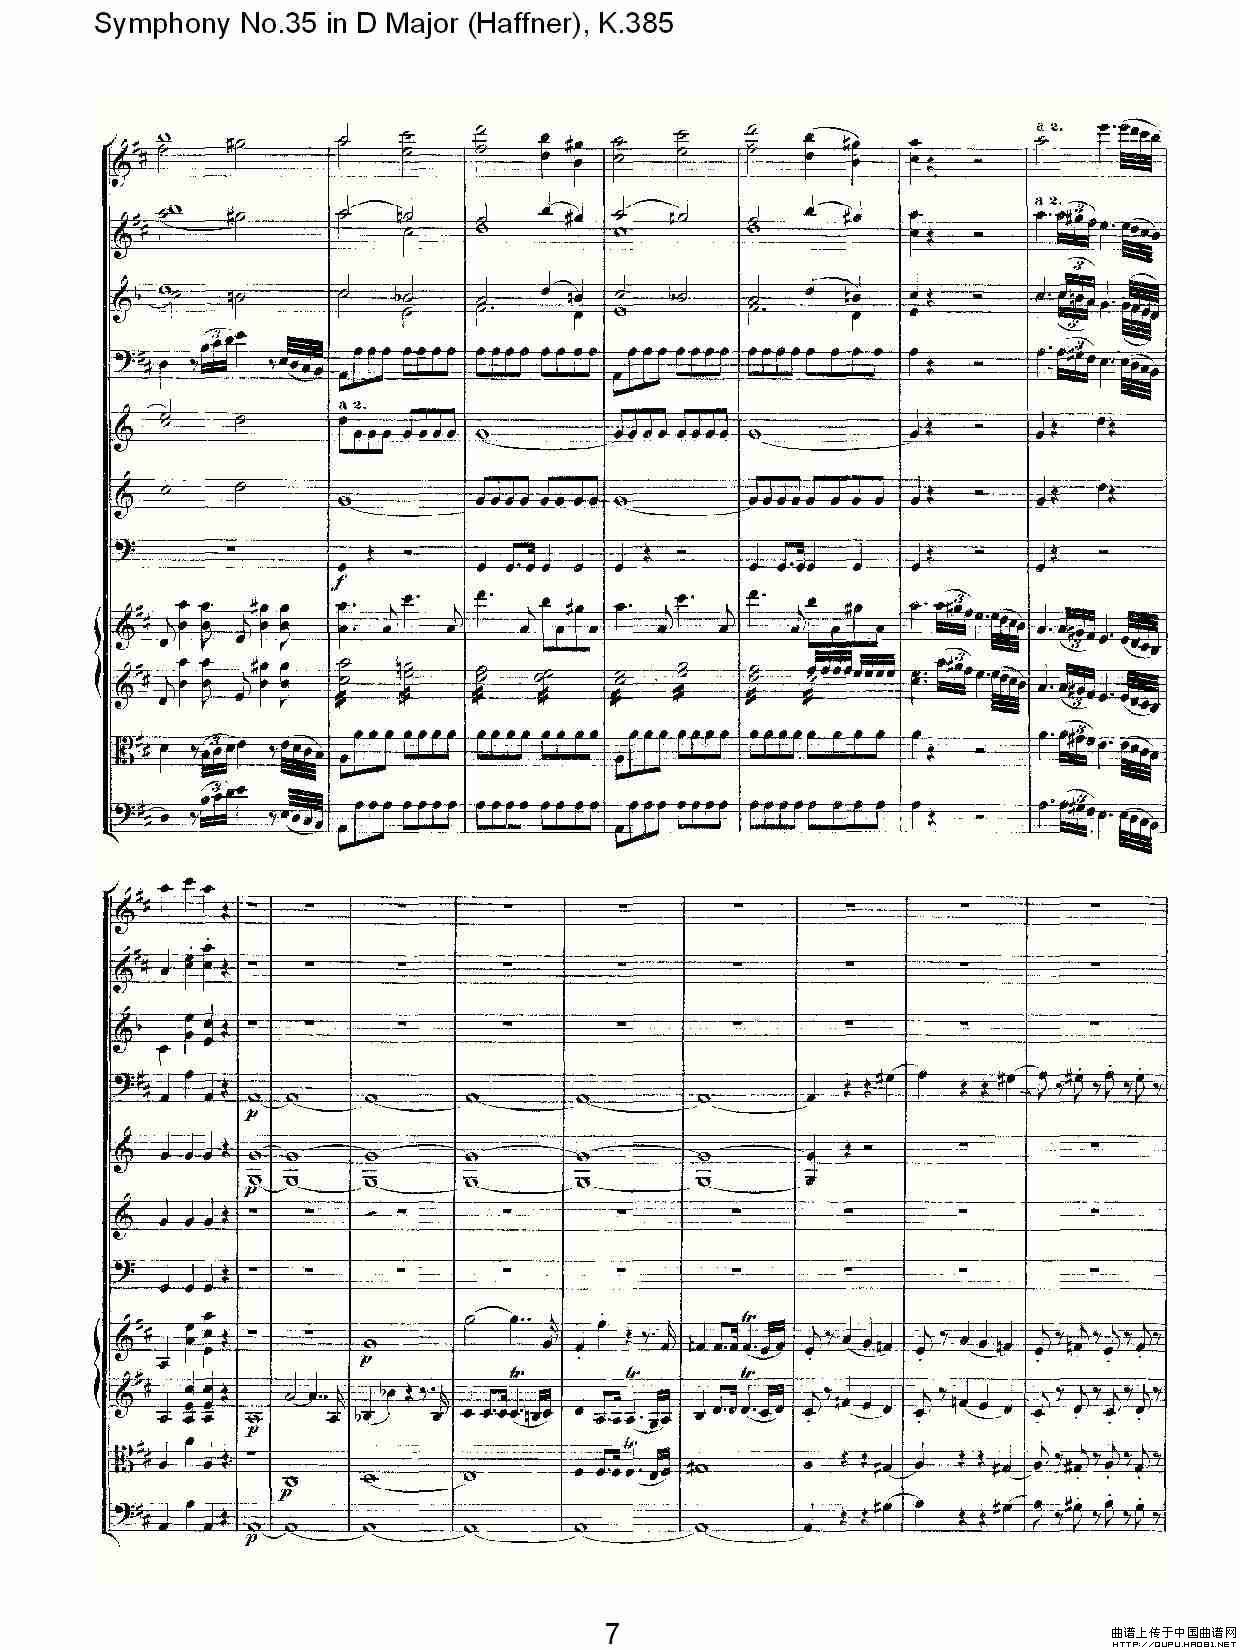 Symphony No.35 in D Major, K.385（D大调第三十五交响曲